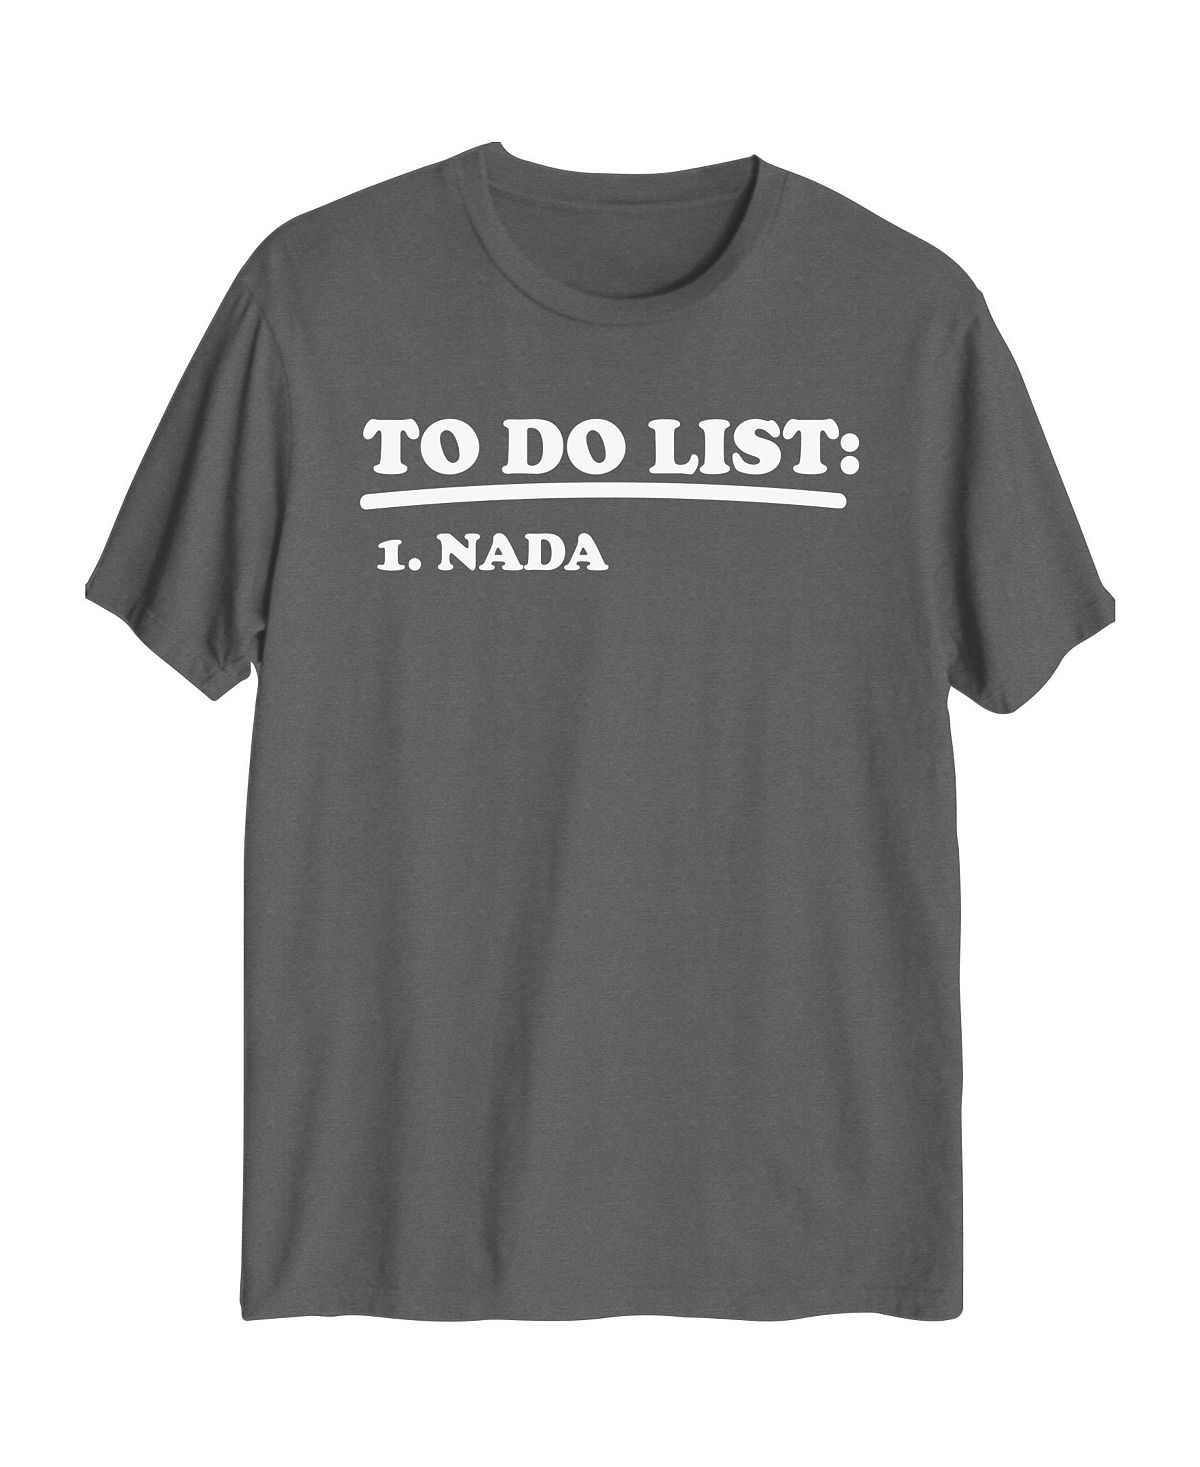 Мужская гибридная футболка с рисунком Nada AIRWAVES мужская футболка с рисунком микки hybrid серый